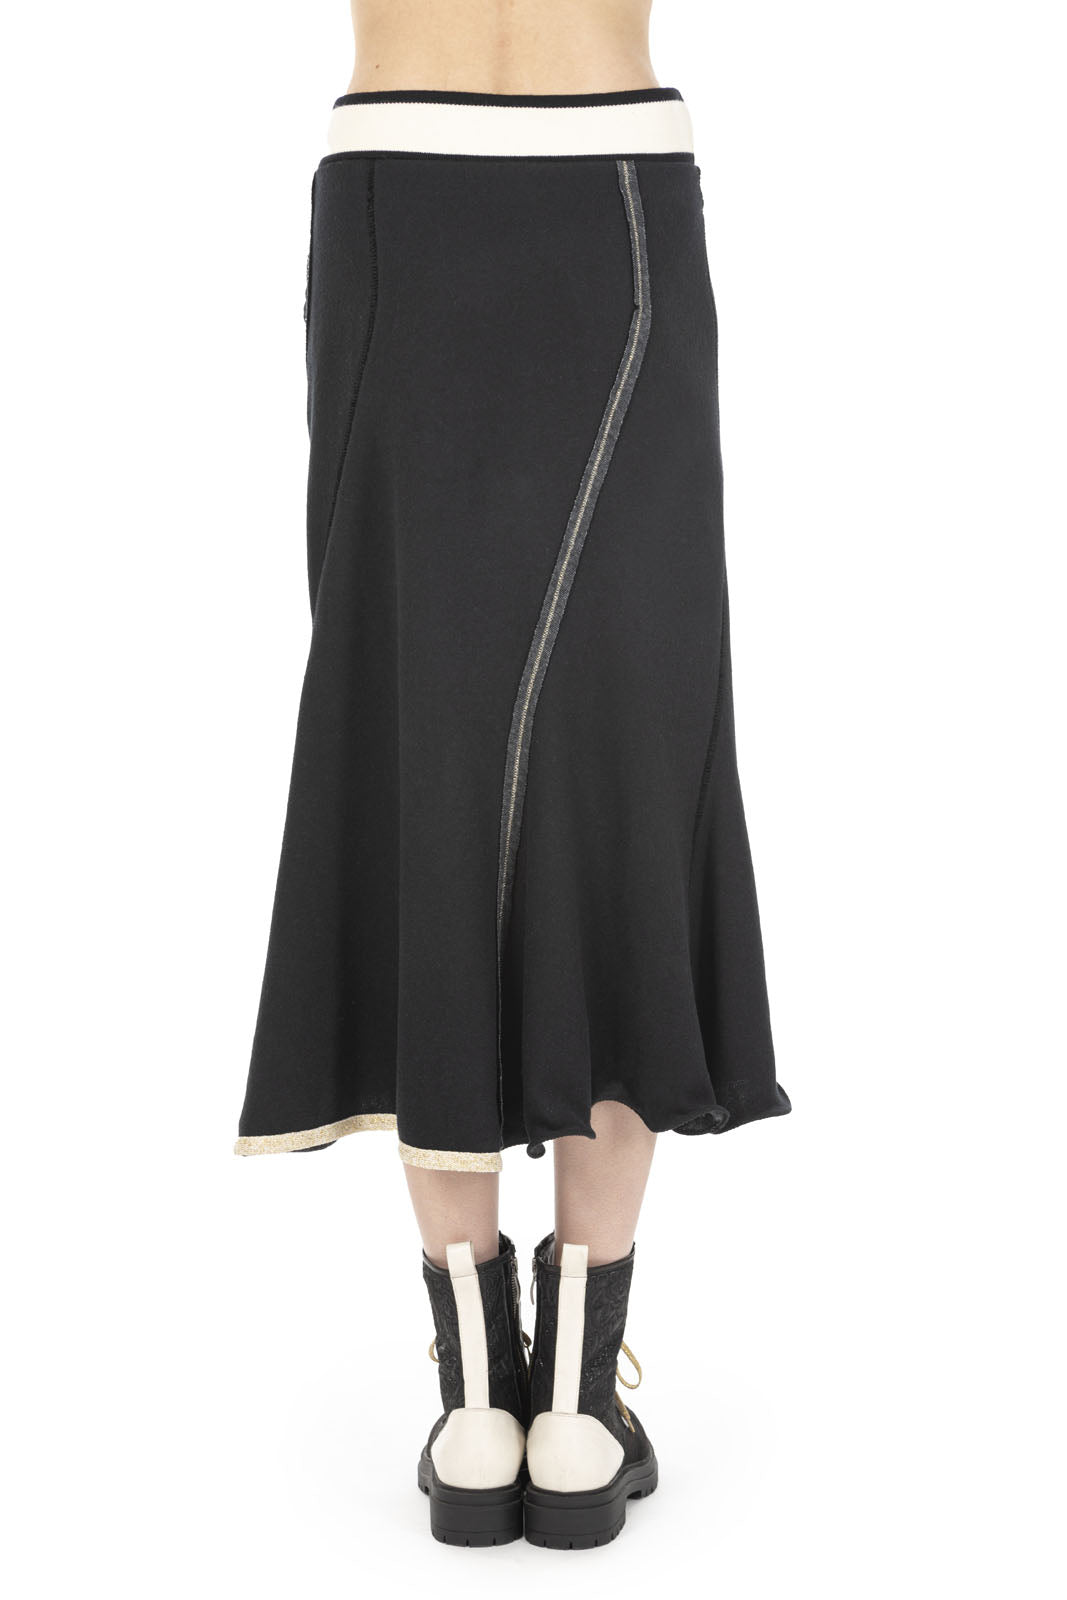 Elisa Cavaletti - Stripe Waistband Midi Skirt